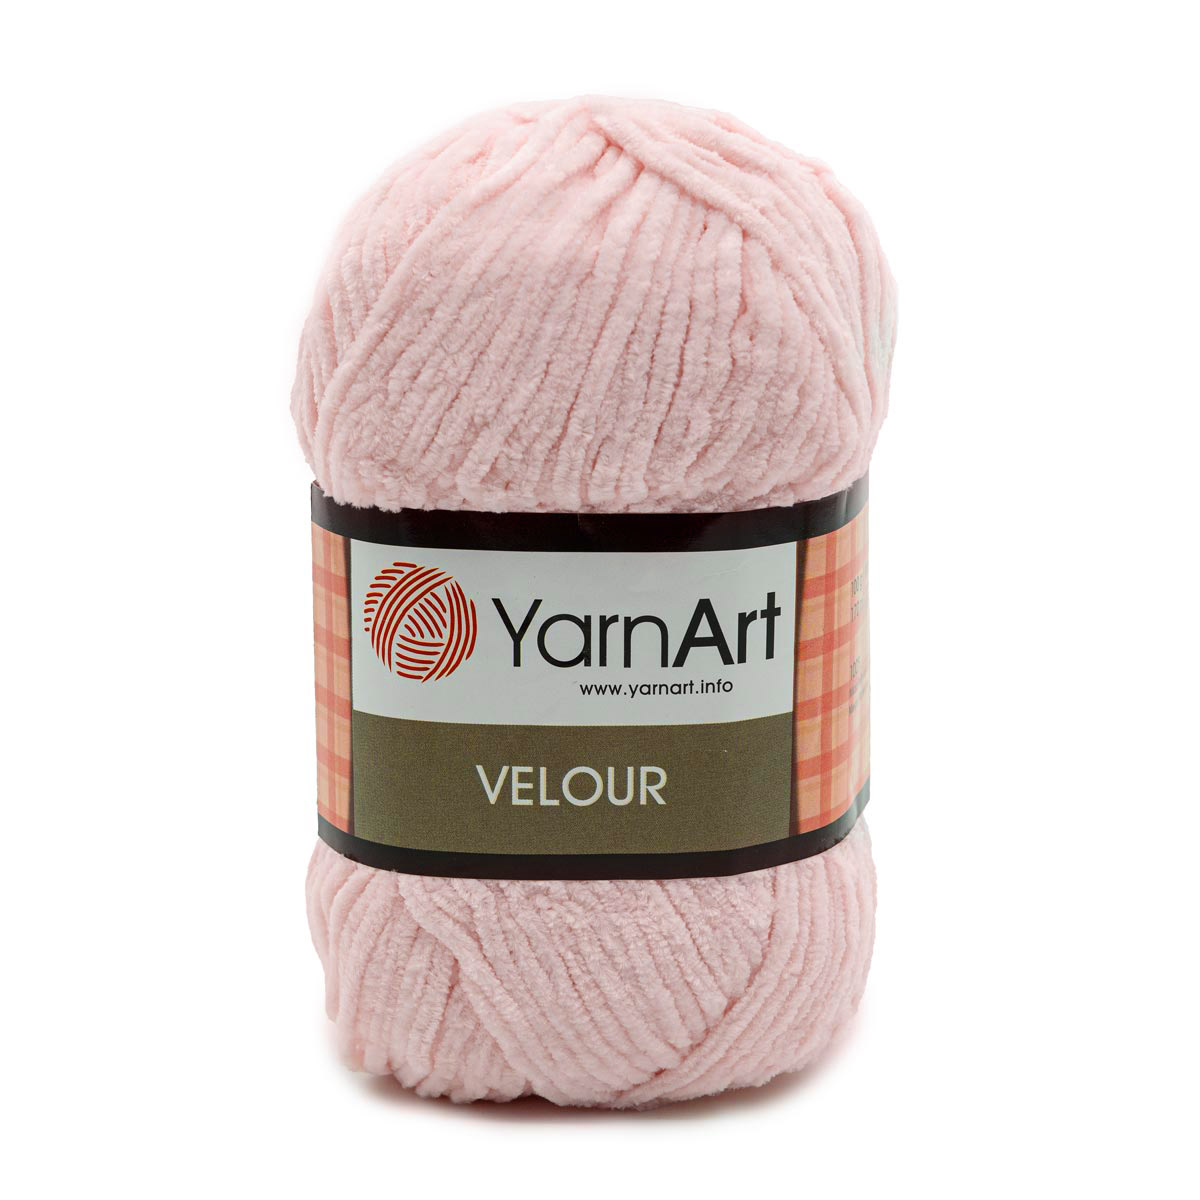 Пряжа для вязания YarnArt Velour 100 г 170 м микрополиэстер мягкая велюровая 5 мотков 866 нежно-розовый - фото 6